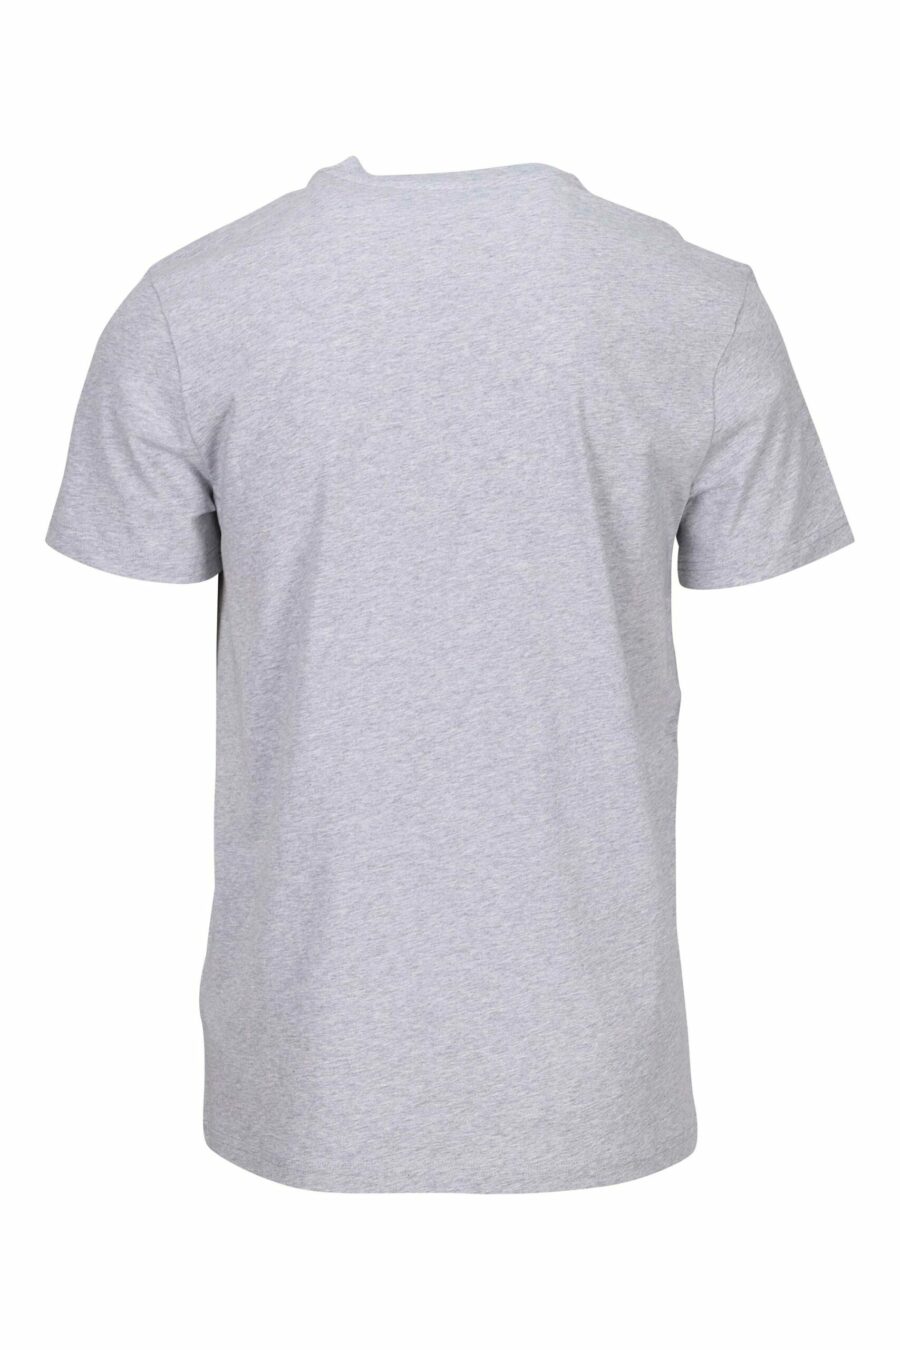 T-shirt oversize en coton biologique gris avec maxilogue noir classique - 667113751986 1 scaled